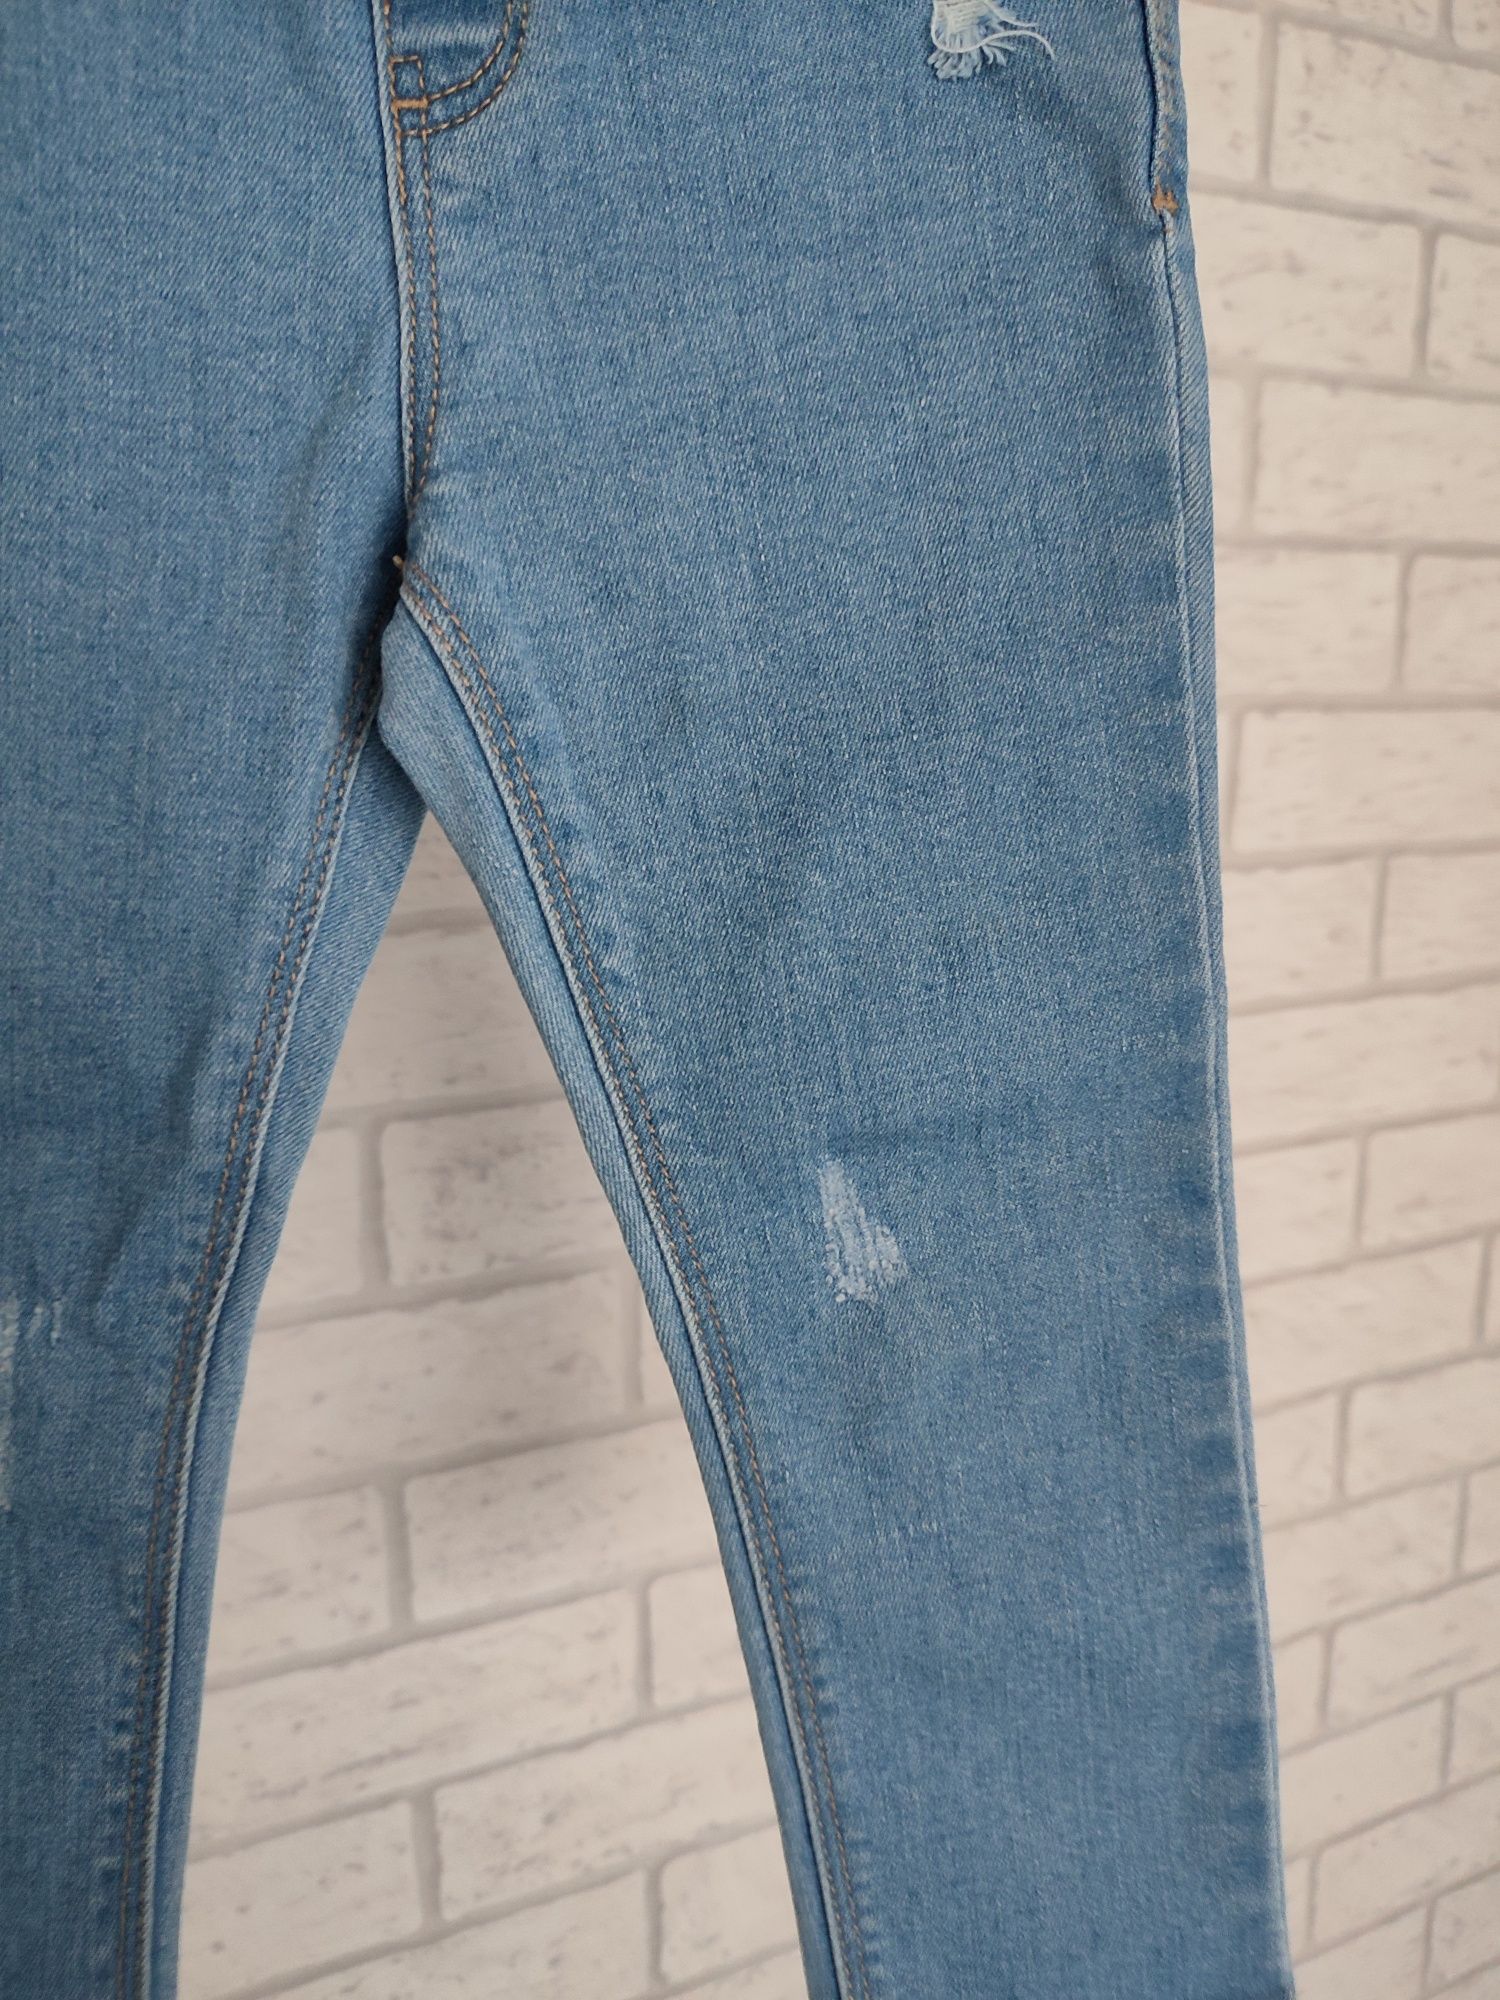 Spodnie jeansowe, jeansy Zara r.92 (ciemniejsze)